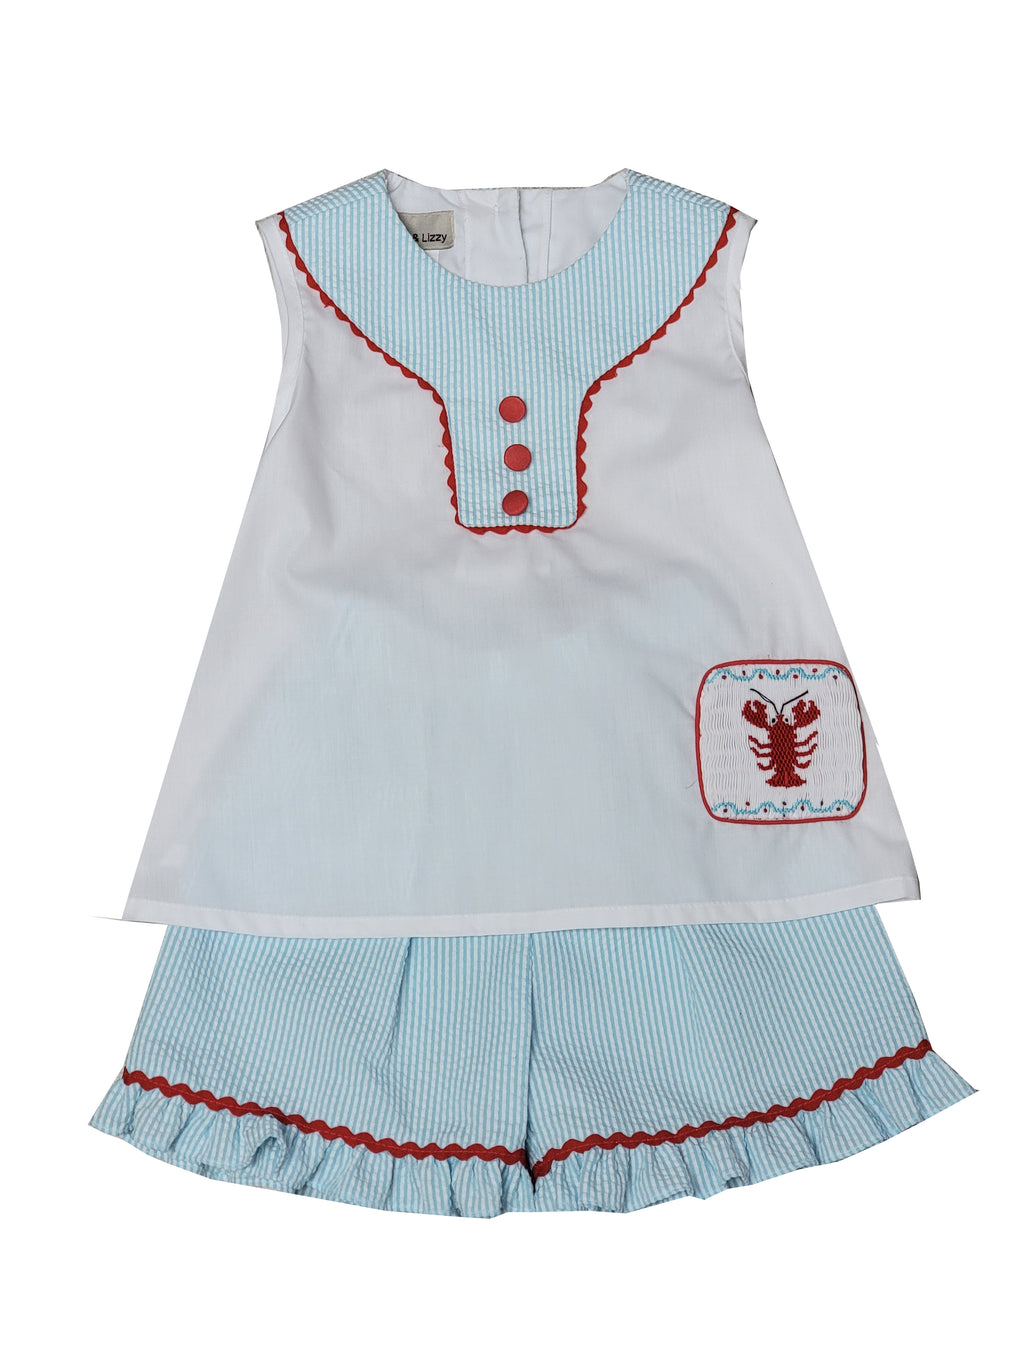 Girl's "Lobster" Seersucker Short Set - Little Threads Inc. Children's Clothing